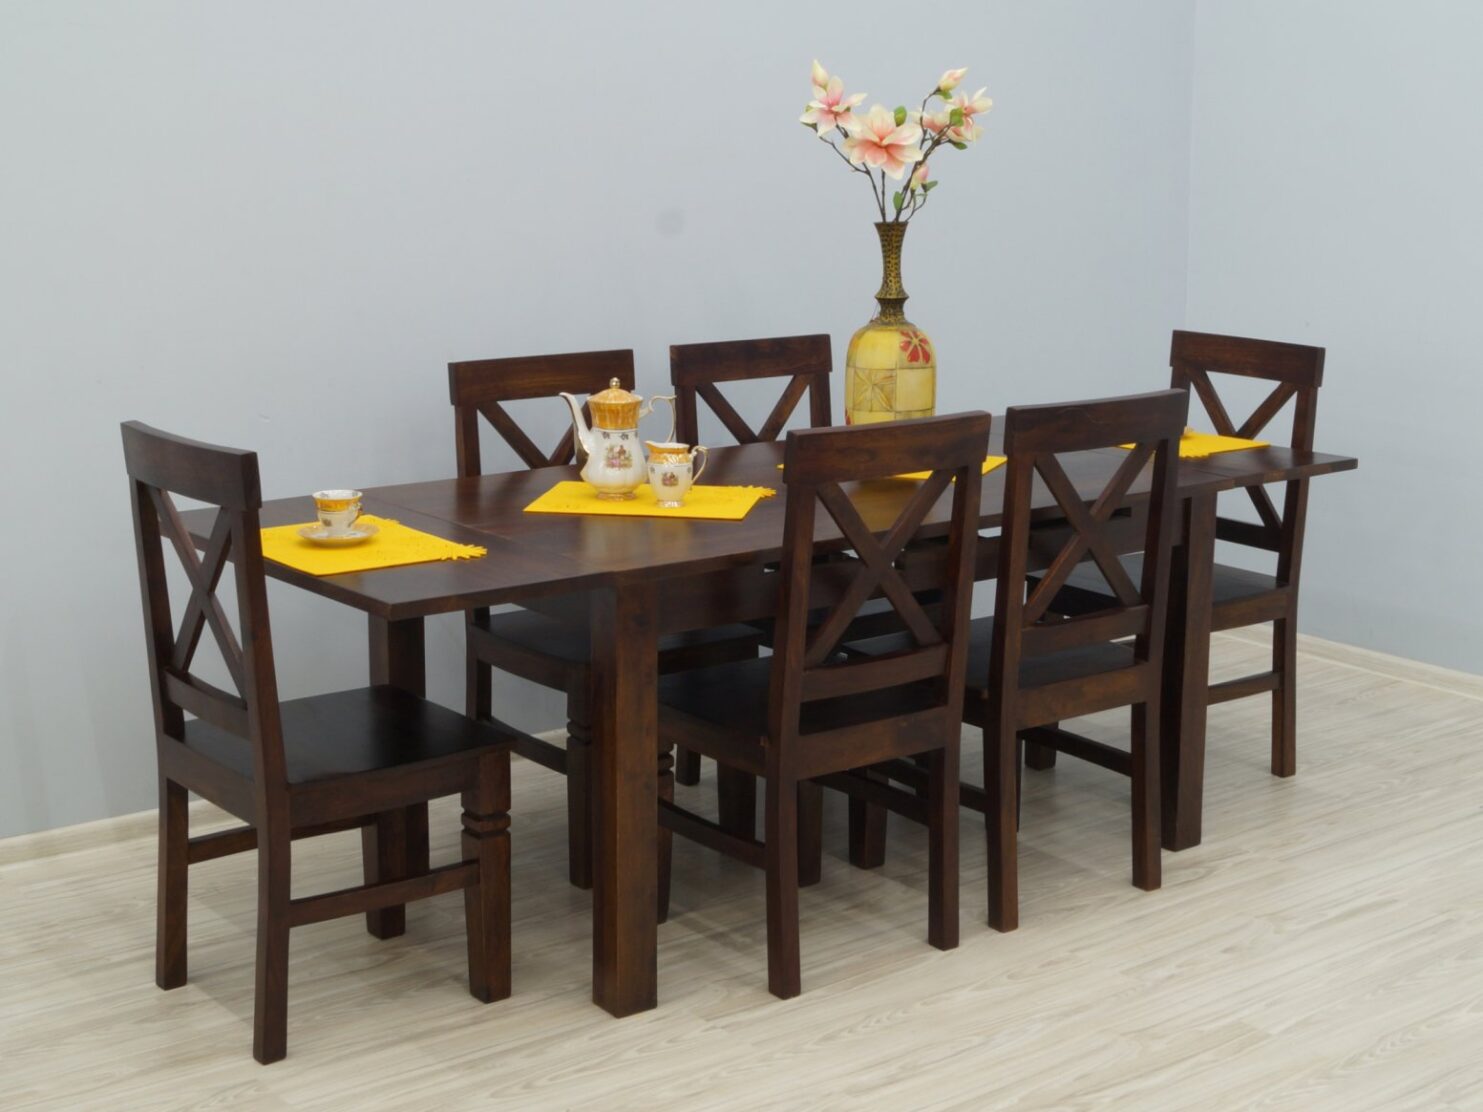 Komplet obiadowy kolonialny stół rozkładany + 6 krzeseł lite drewno palisander indyjski ażurowe oparcia